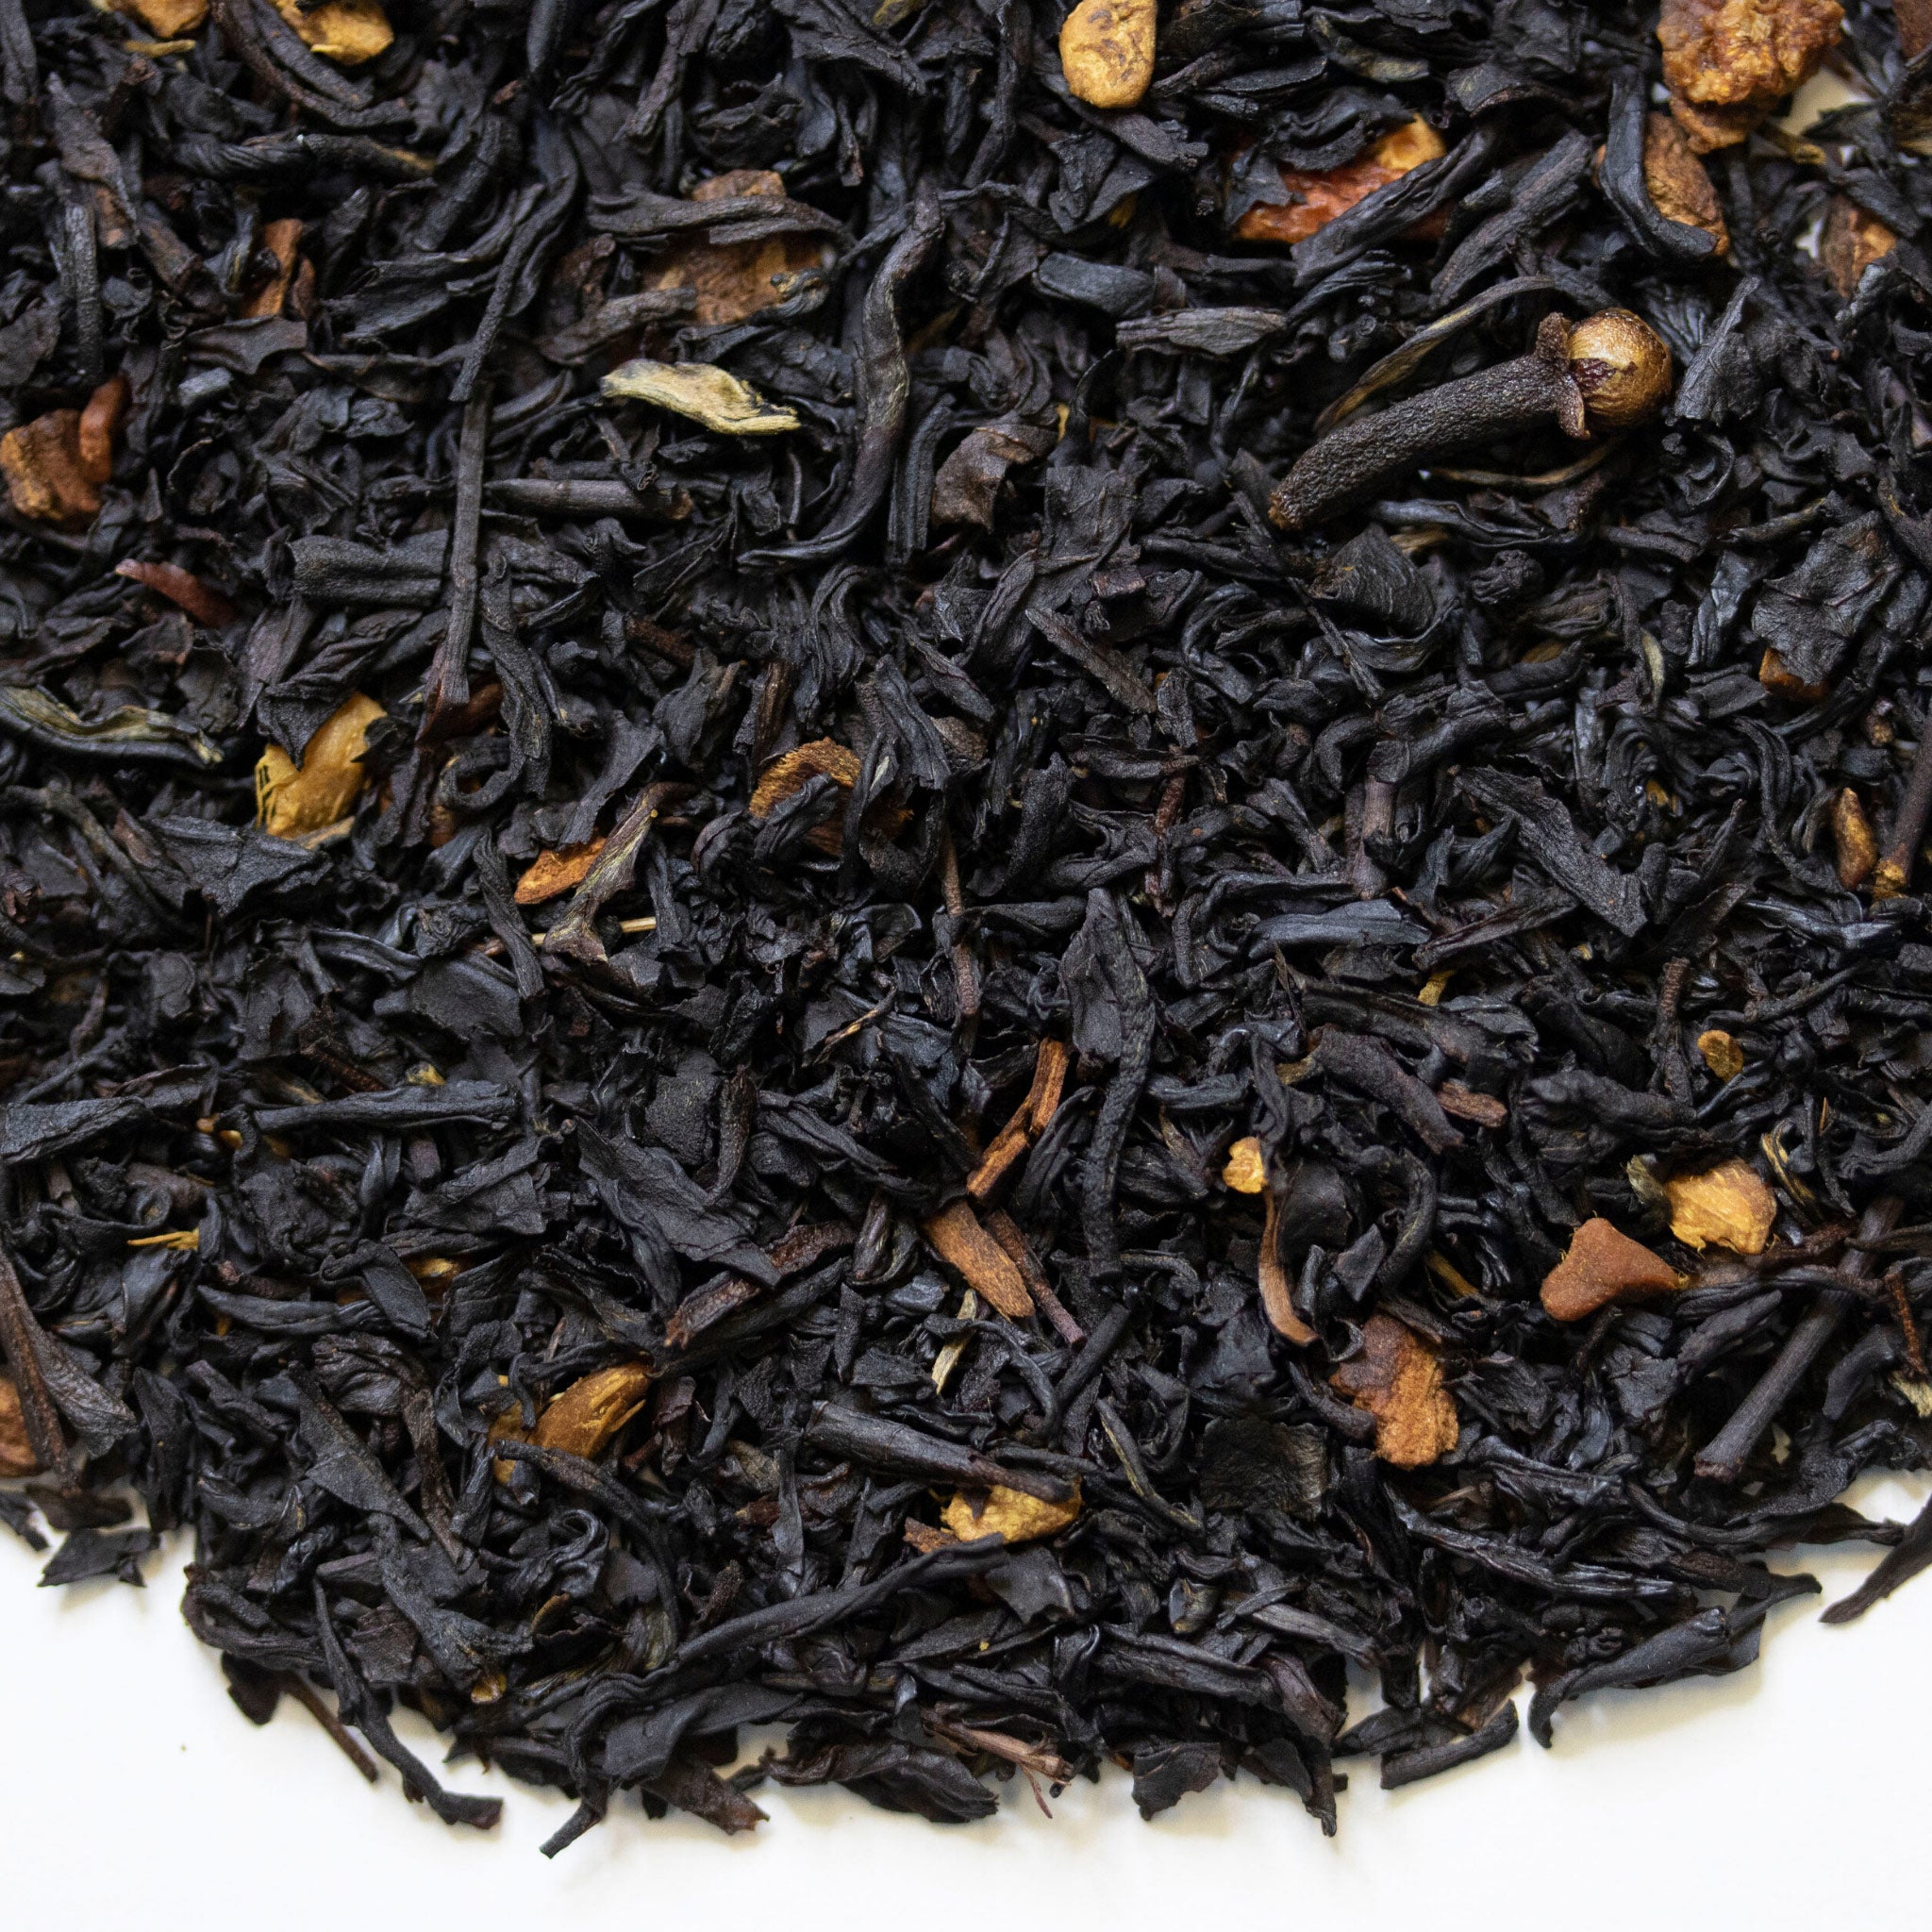 Loose leaf TeaSource Spice black tea